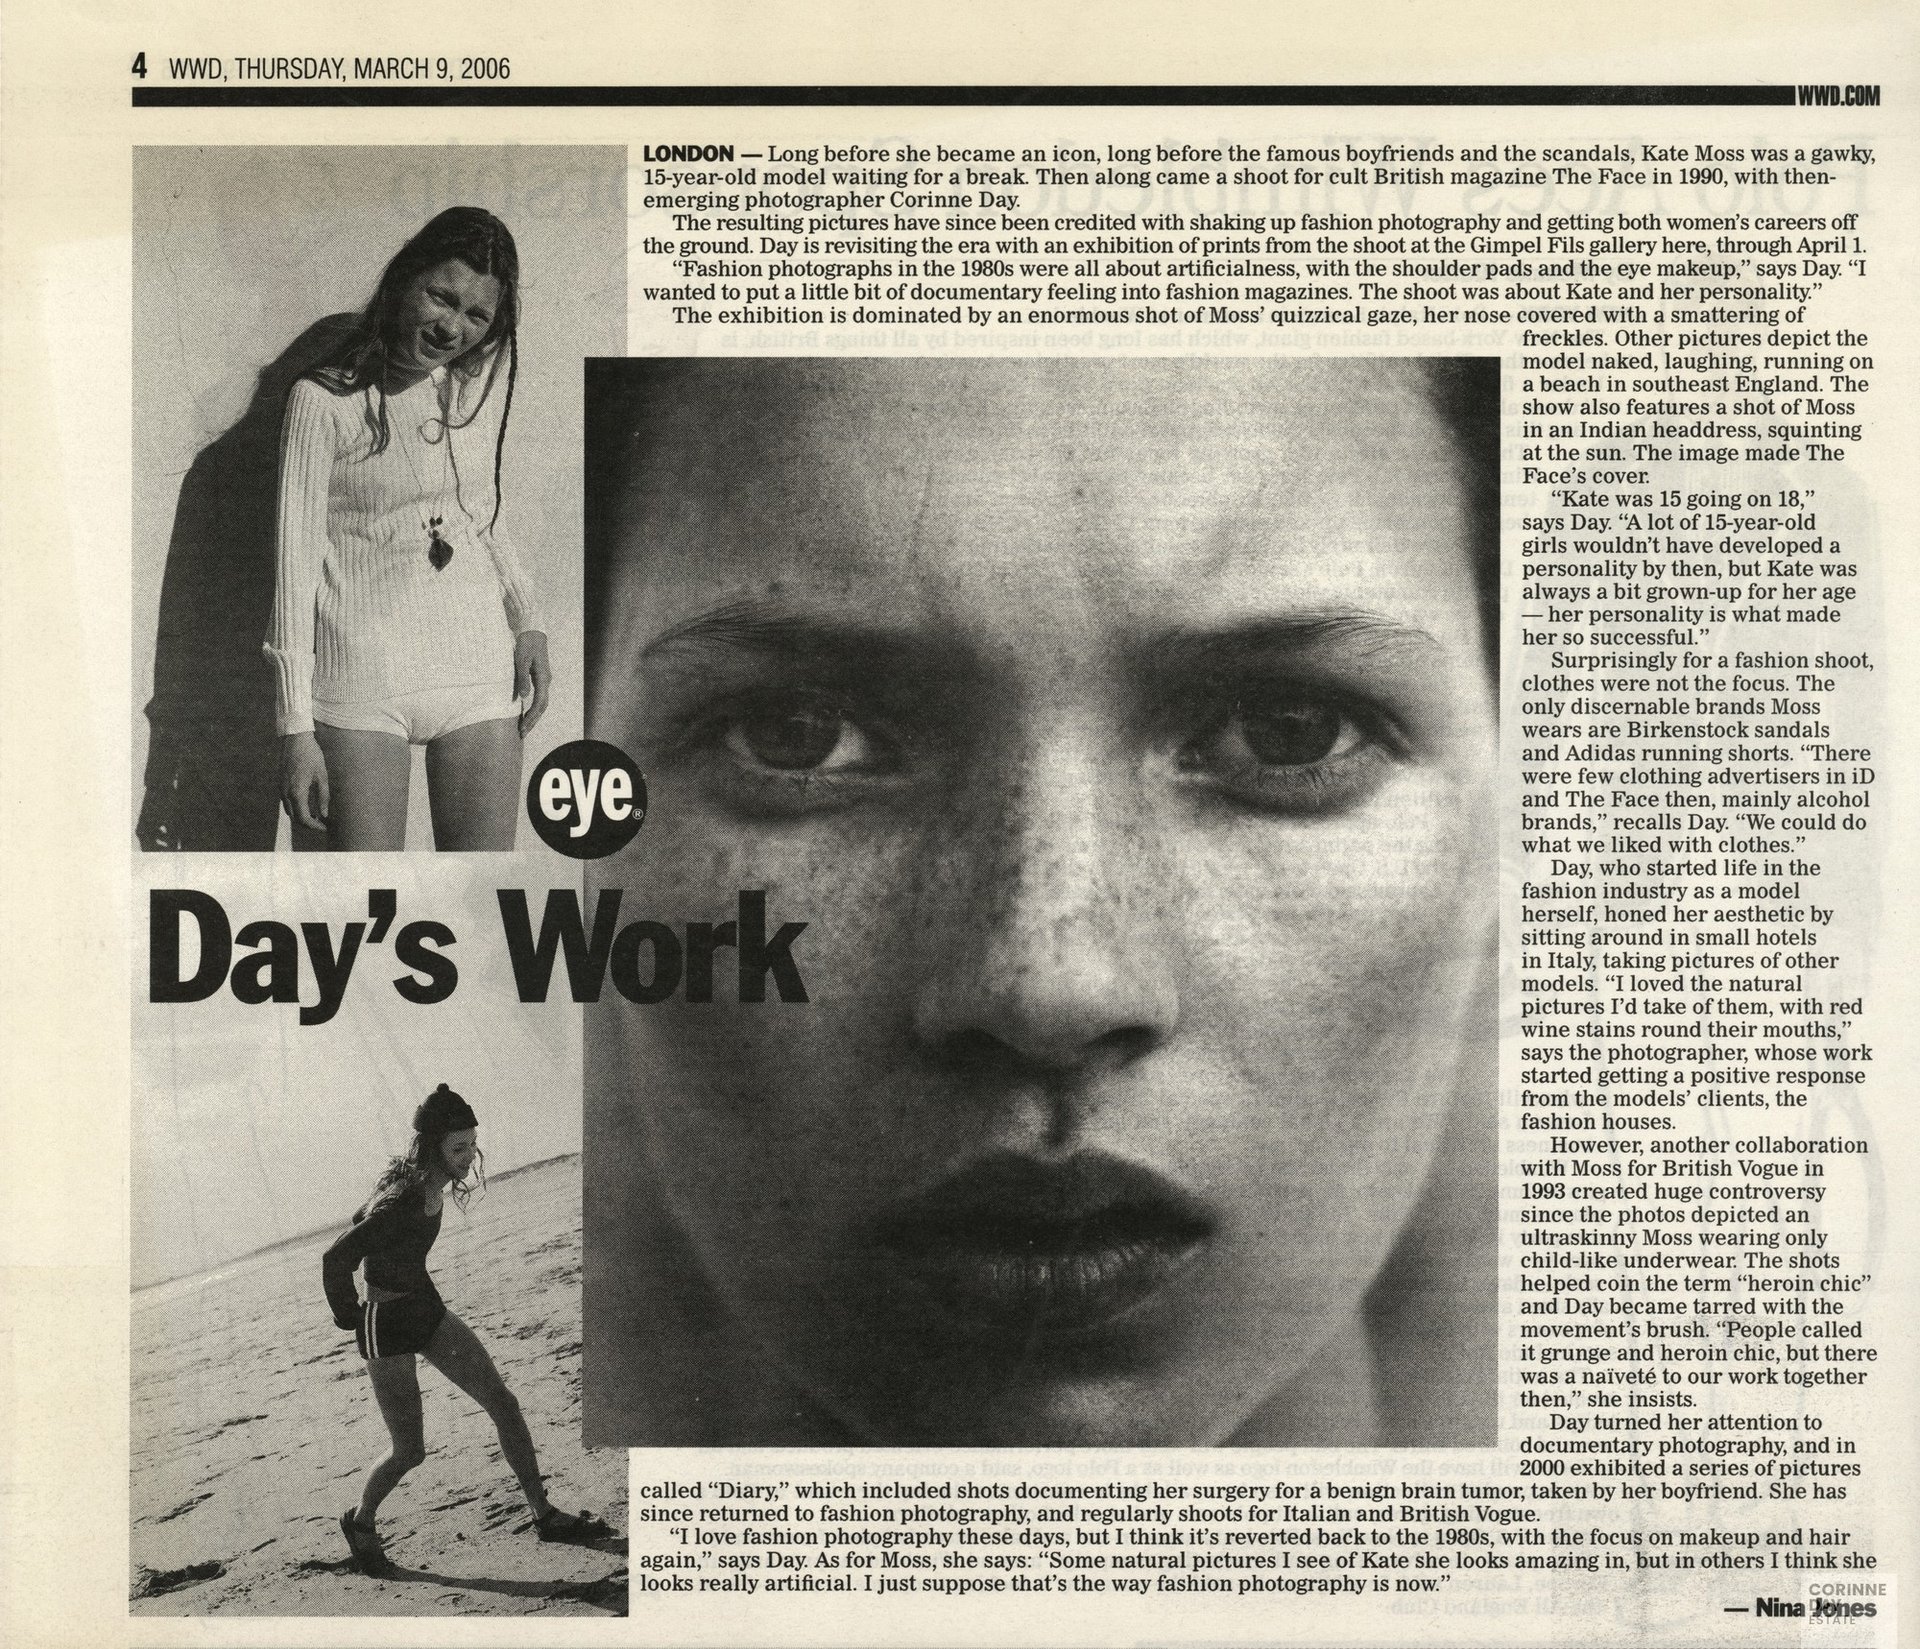 Day's Work, WWD, 9 Mar 2006 — Image 1 of 1